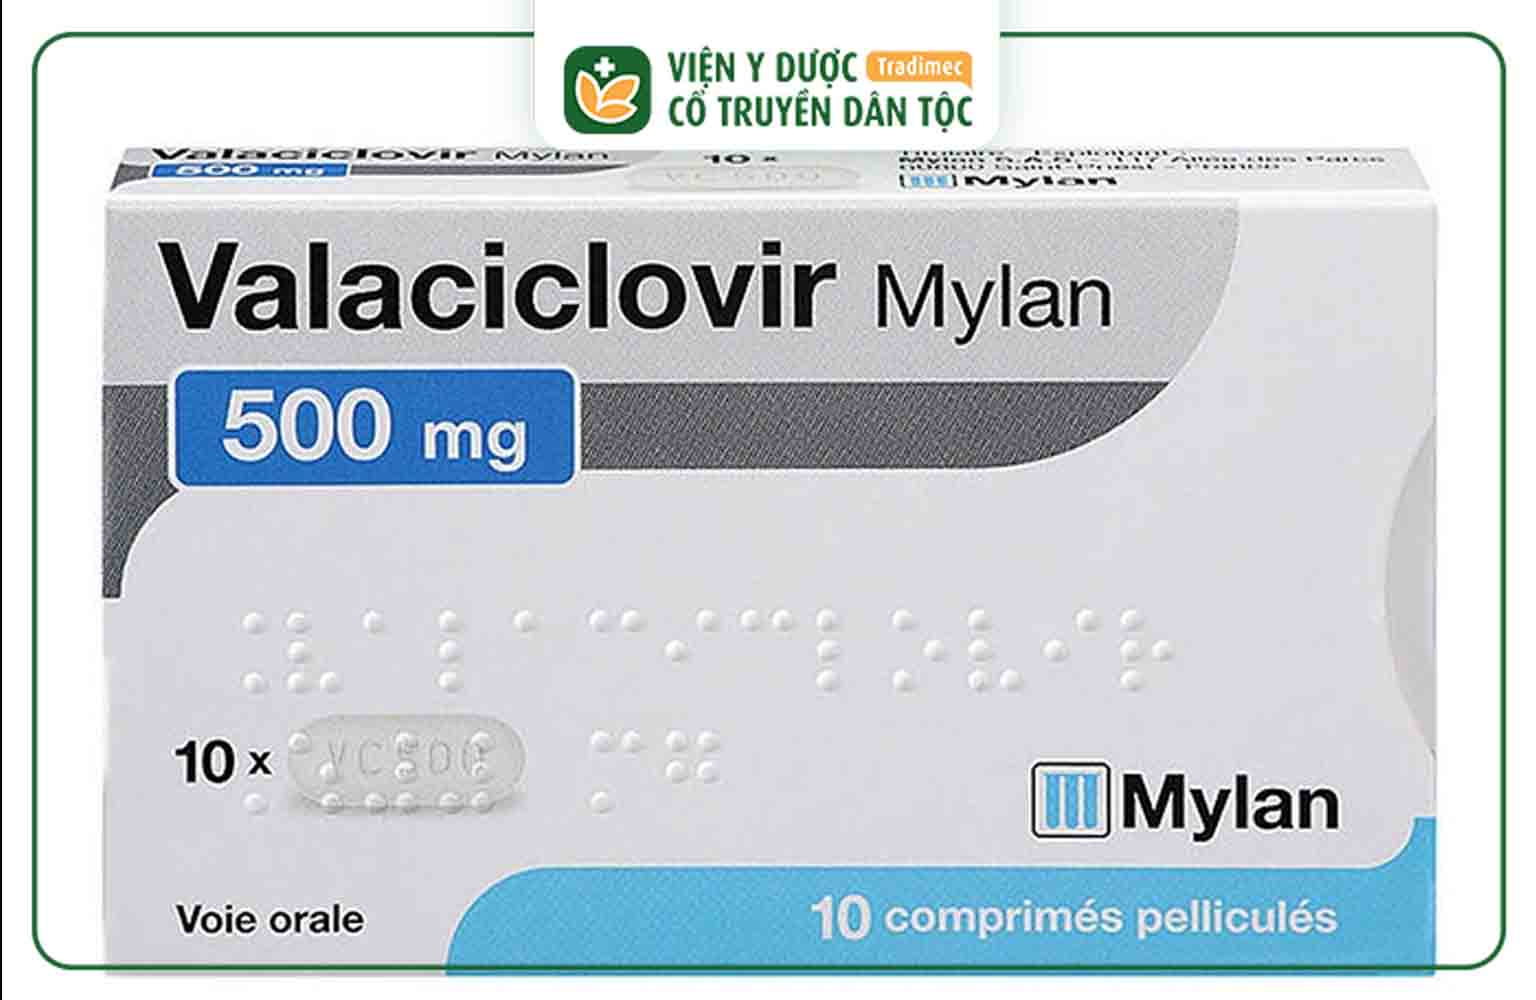 Valacylovir là loại thuốc kháng virus, làm chậm sự phát triển và lây lan của virus herpes